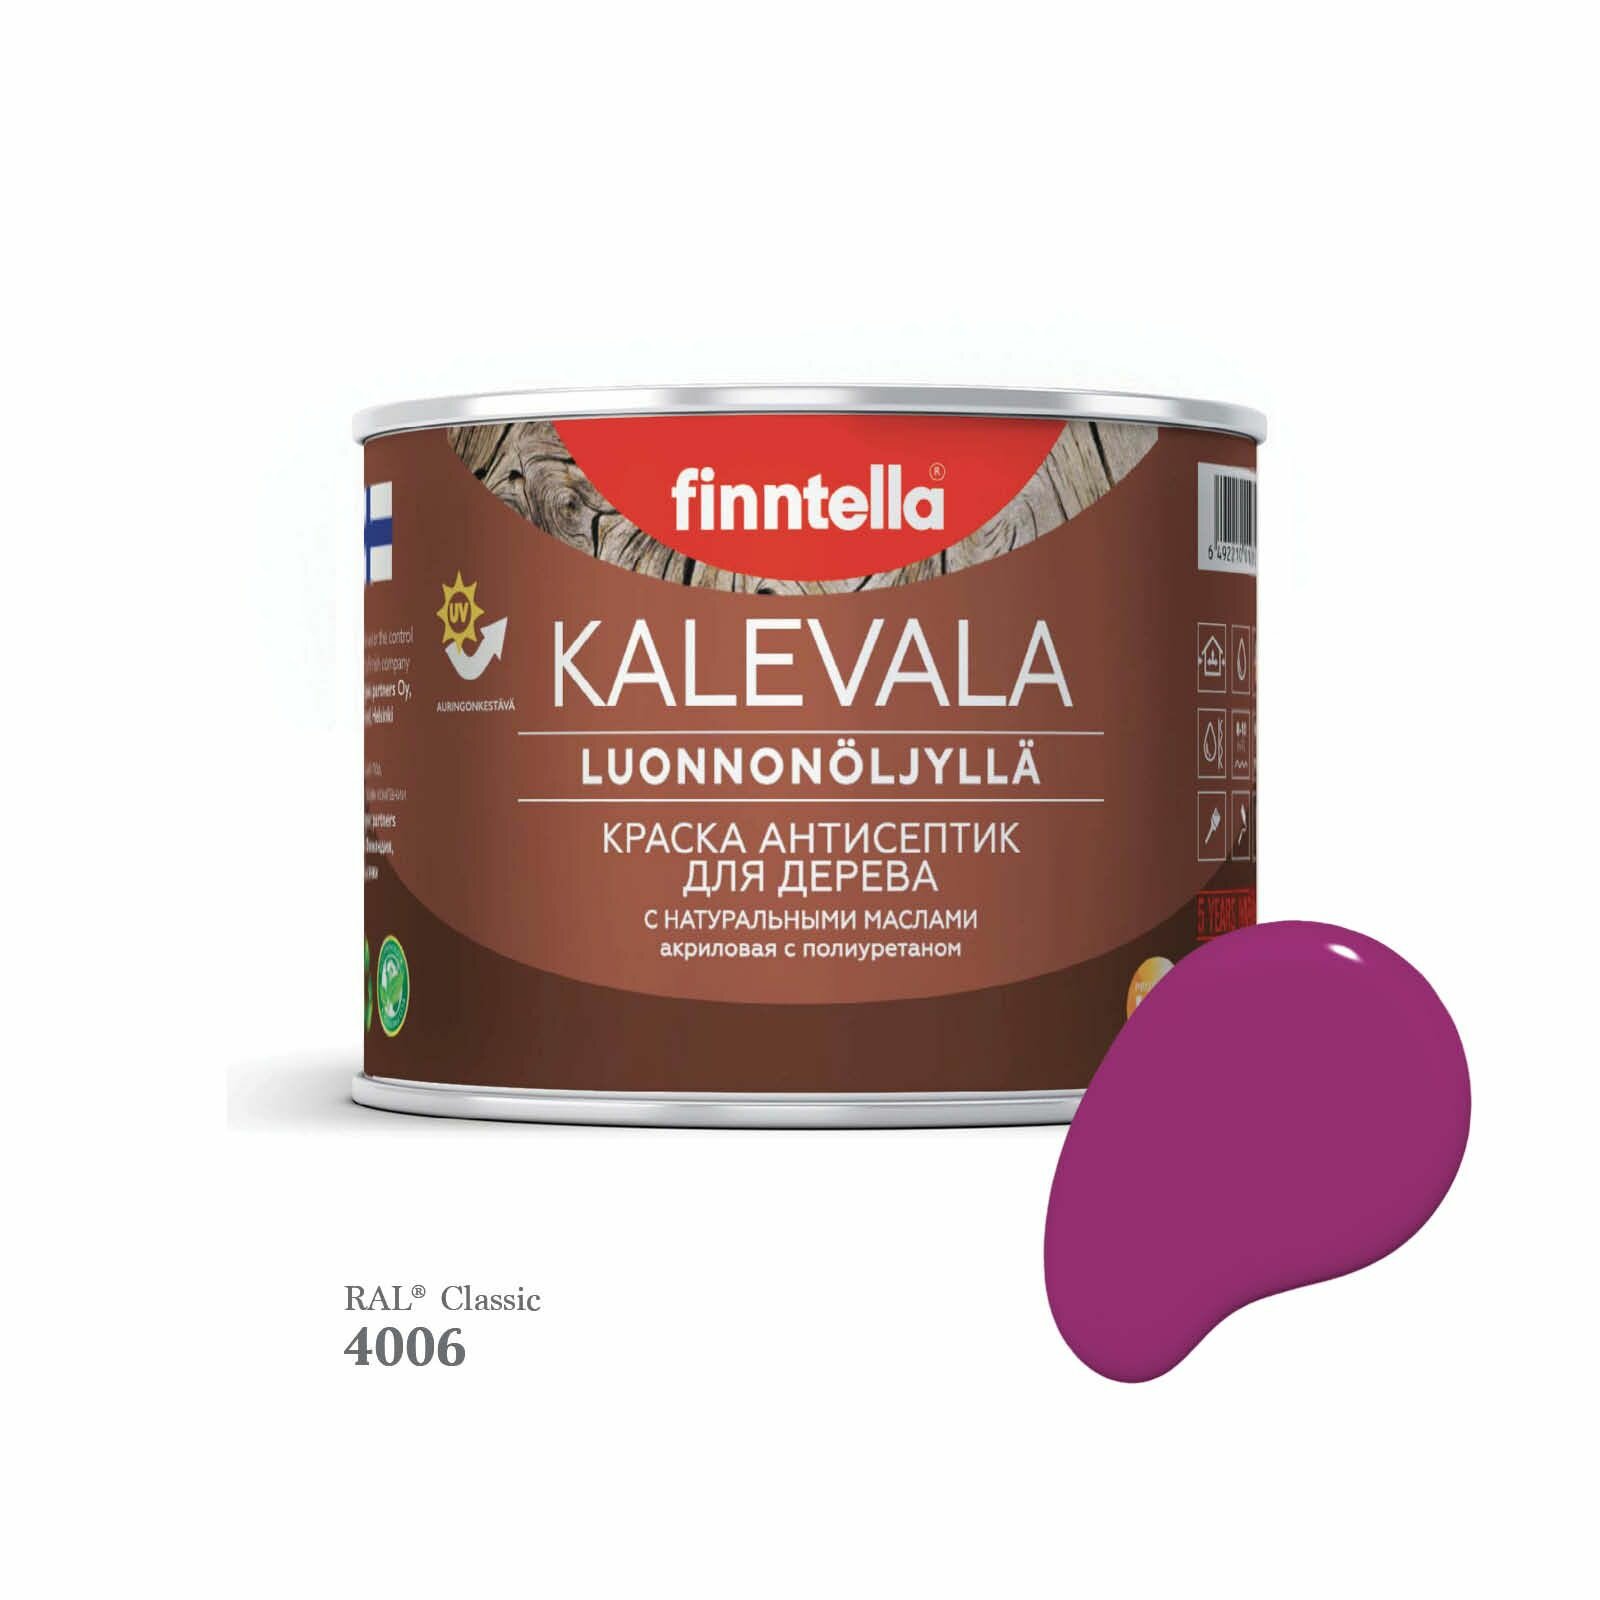 Краска для дерева и деревянных фасадов FINNTELLA KALEVALA, с натуральным маслом и полиуретаном, цвет RAL 4006 Транспортный пурпурный (Traffic purple), 0,45л